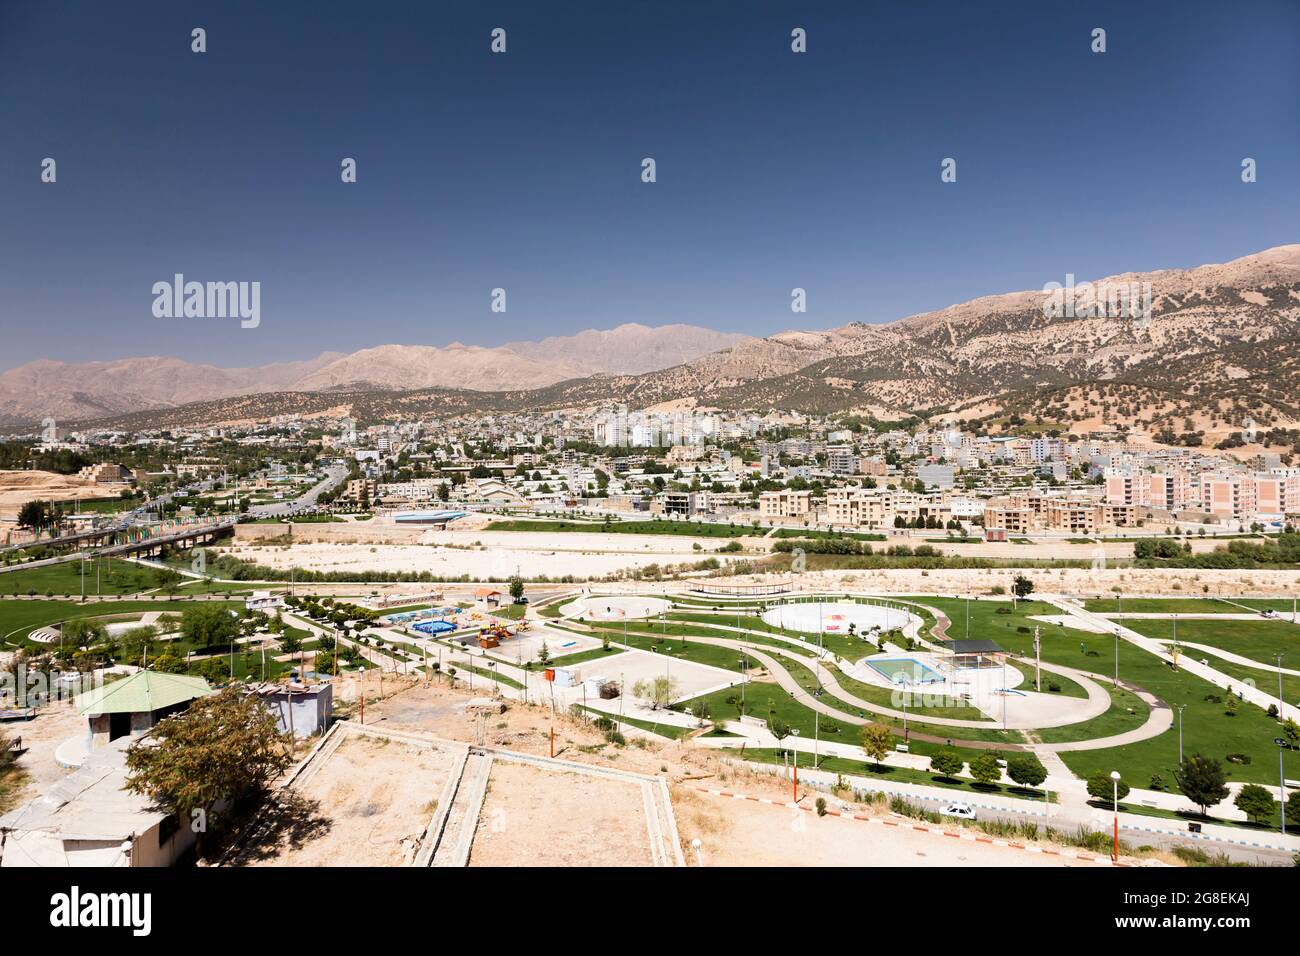 Paesaggio urbano di Yasuj sull'altopiano, montagne di Zagros (catena Dena), Yasuj, Kohgiluyeh e provincia di Boyer-Ahmad, Iran, Persia, Asia occidentale, Asia Foto Stock